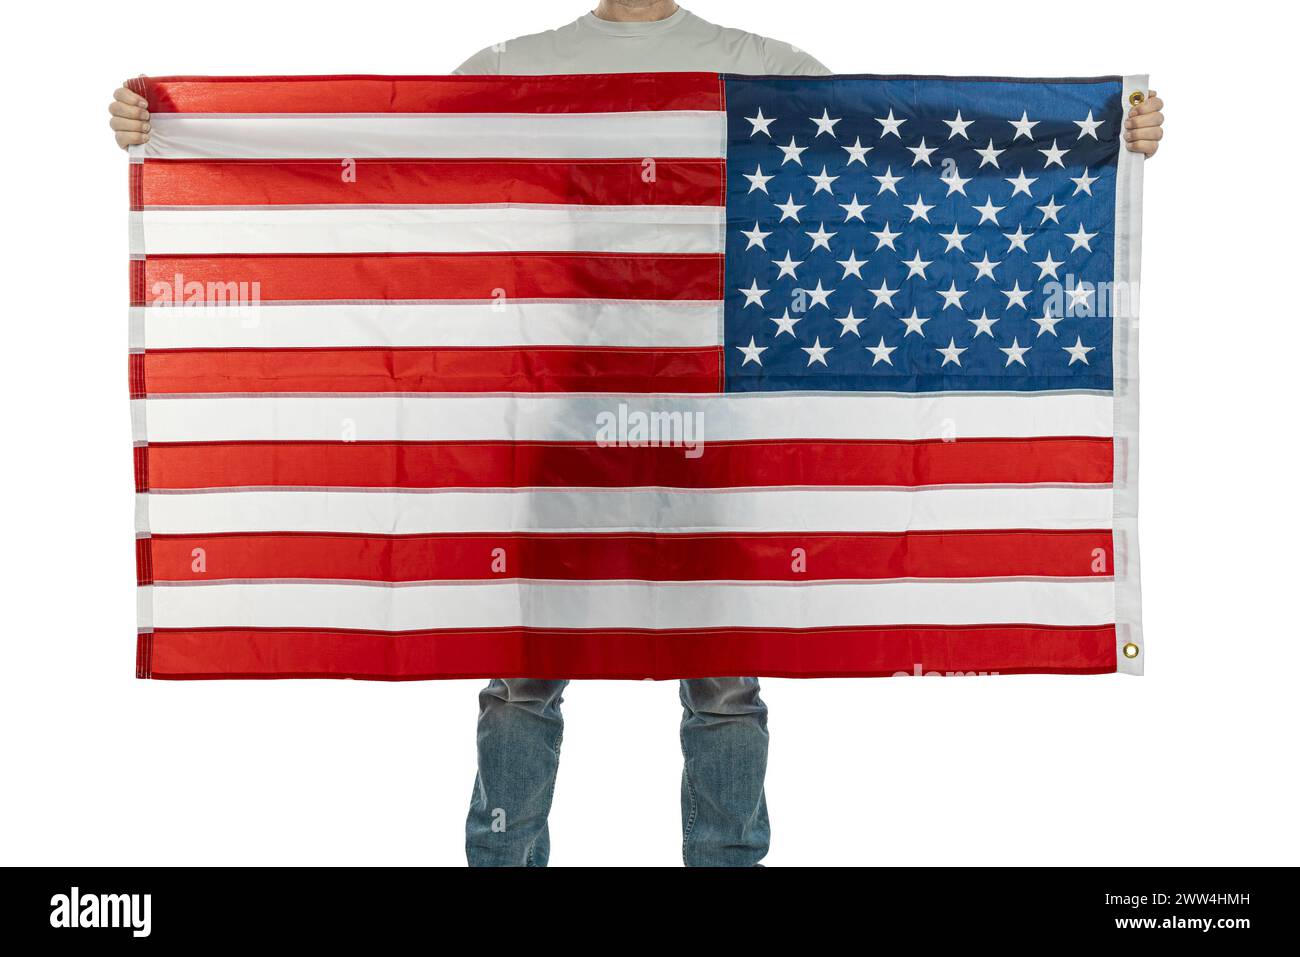 Anonyme Individuen zeigen eine große Flagge der vereinigten staaten, die Patriotismus und Nationalstolz symbolisiert Stockfoto